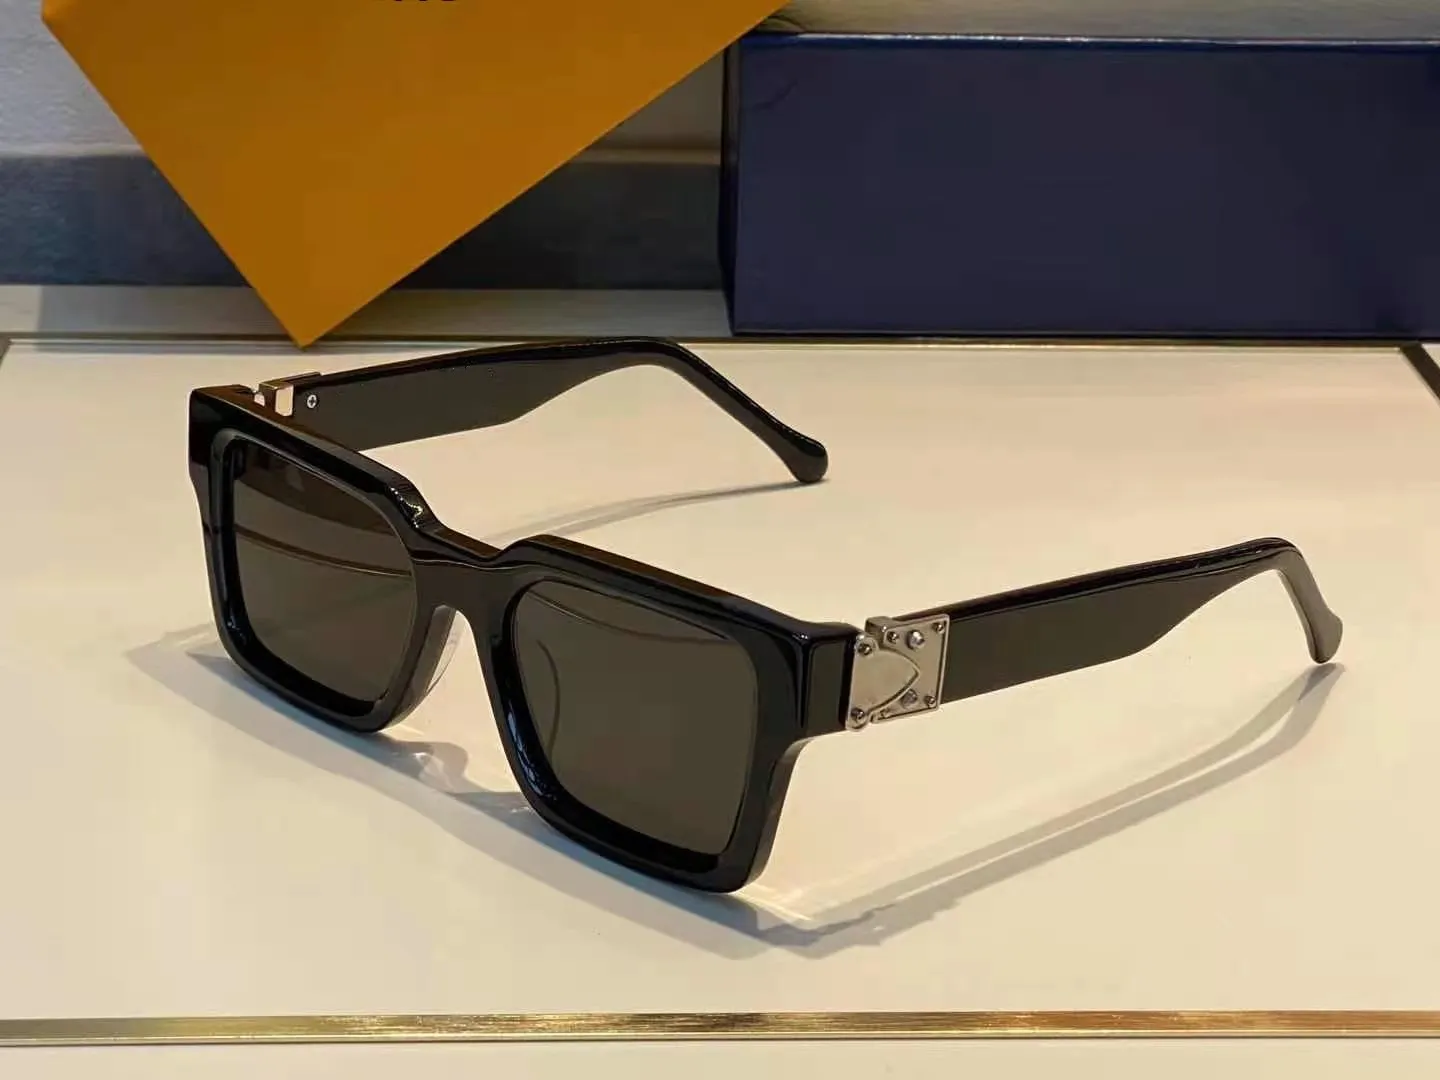 Najwyższa jakość 1413 Męskie okulary przeciwsłoneczne dla kobiet mężczyzn okularów słonecznych styl mody chroni oczy Oczy Uv400 z case2545